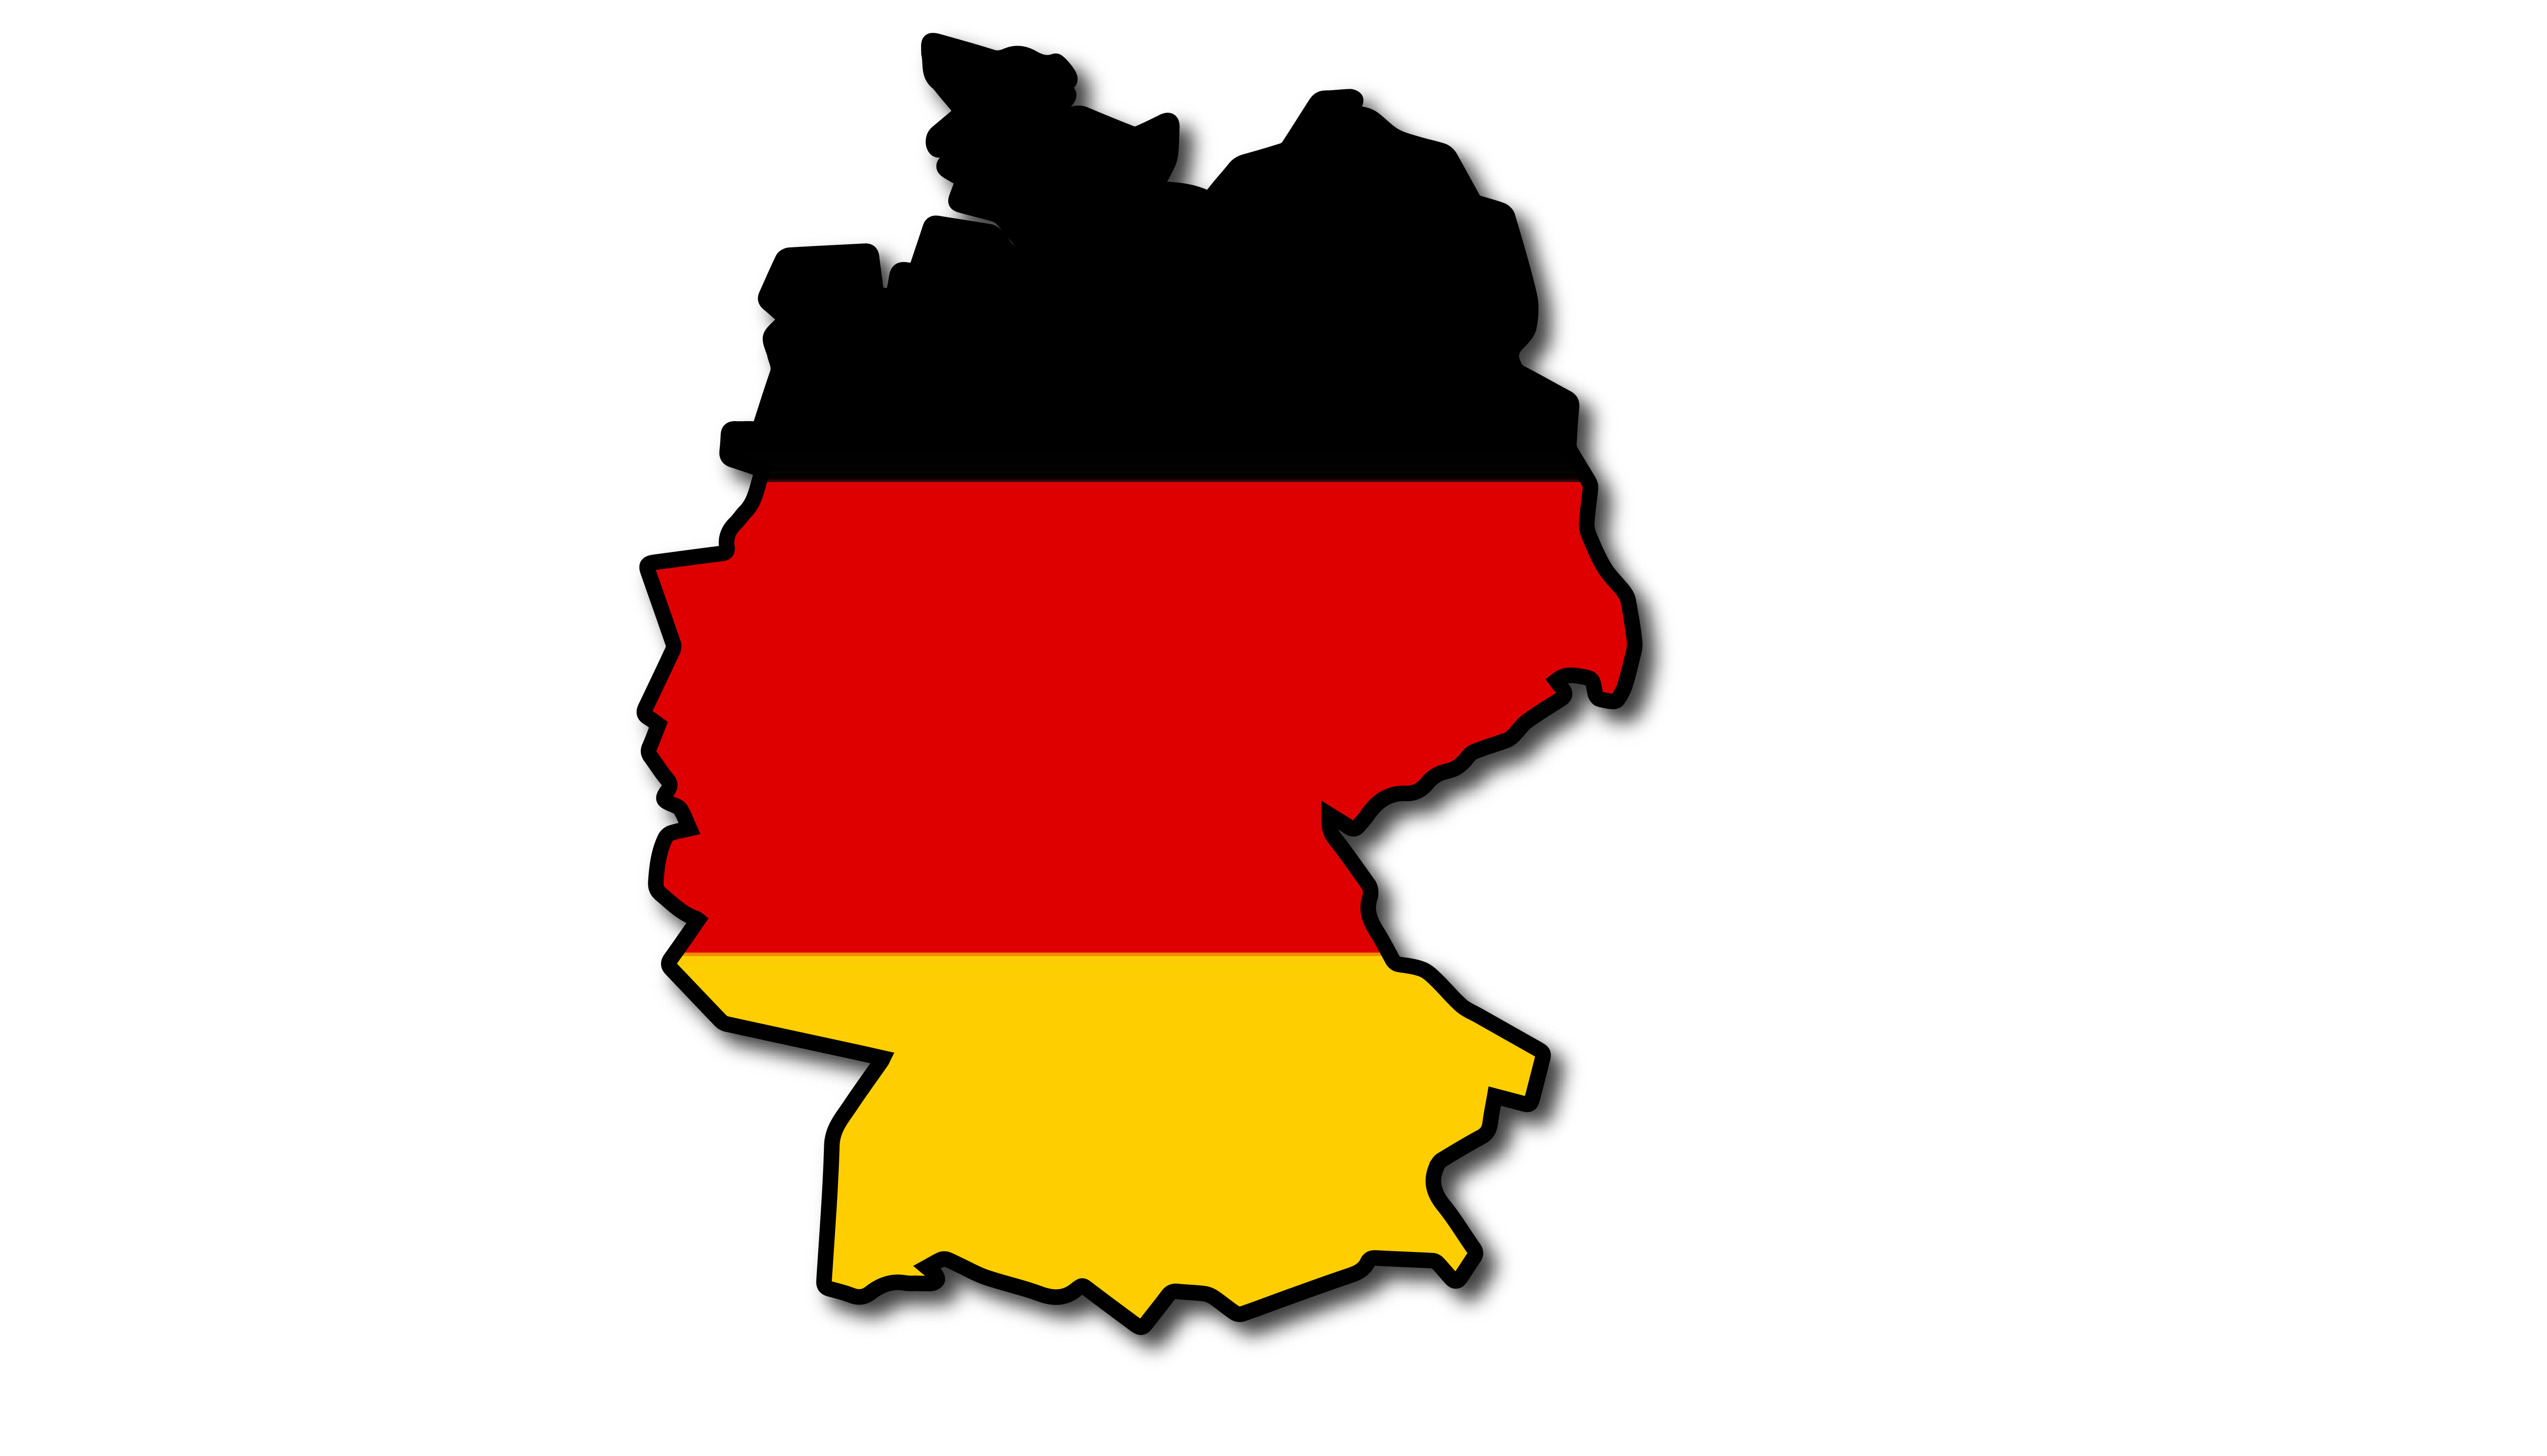 Carte de l'Allemagne